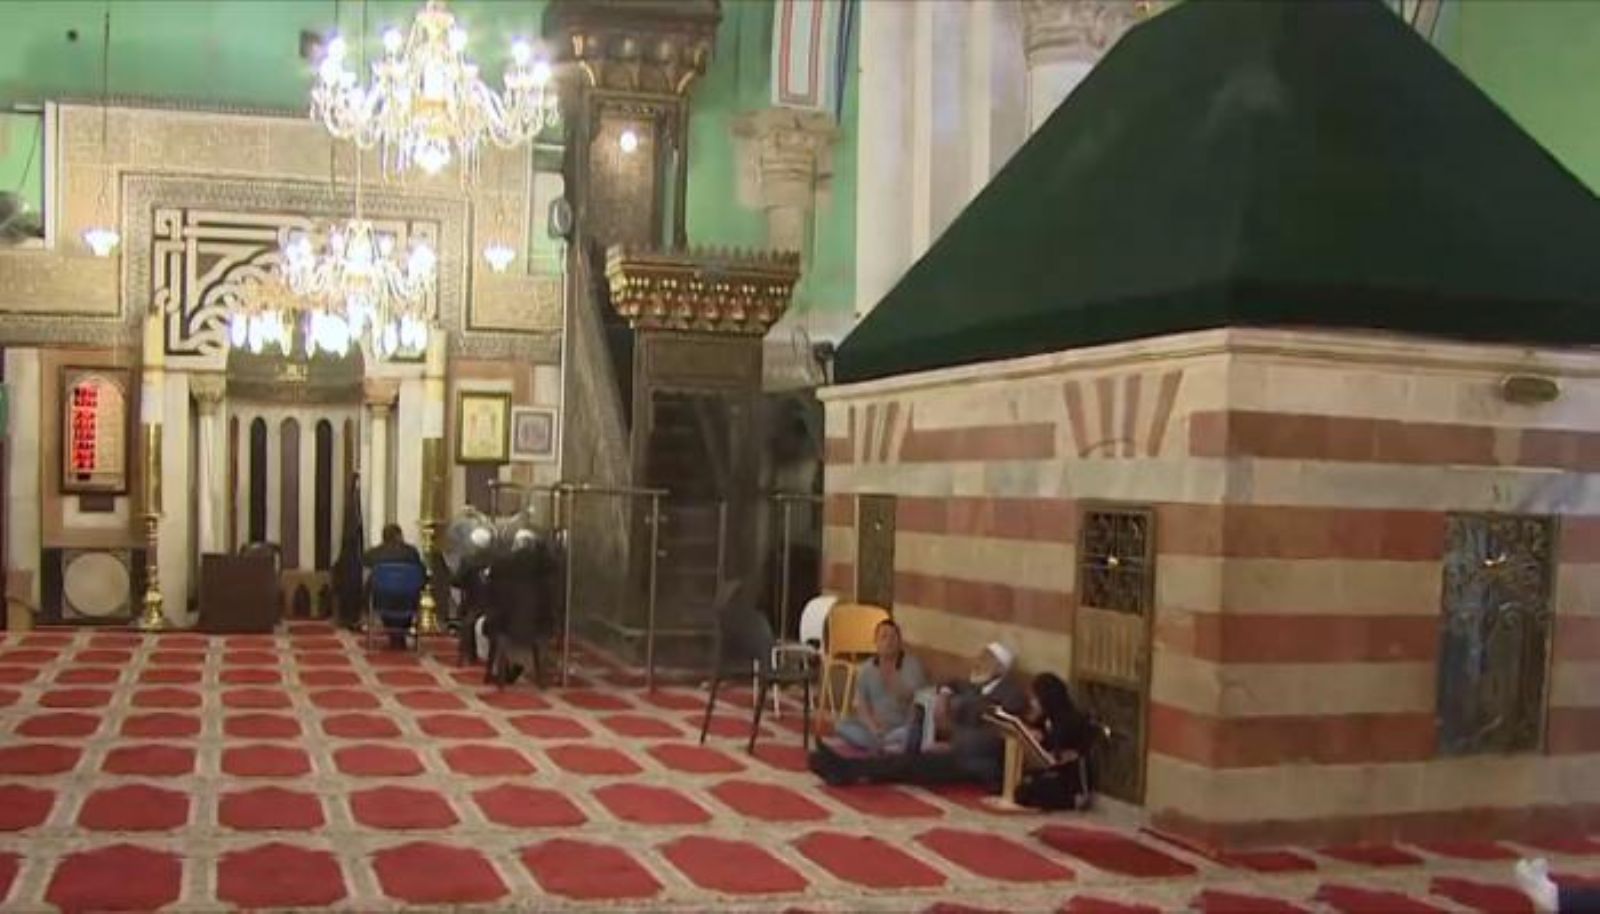 من الأنبياء المدفونون في مسجد إبراهيم الخليل في فلسطين؟